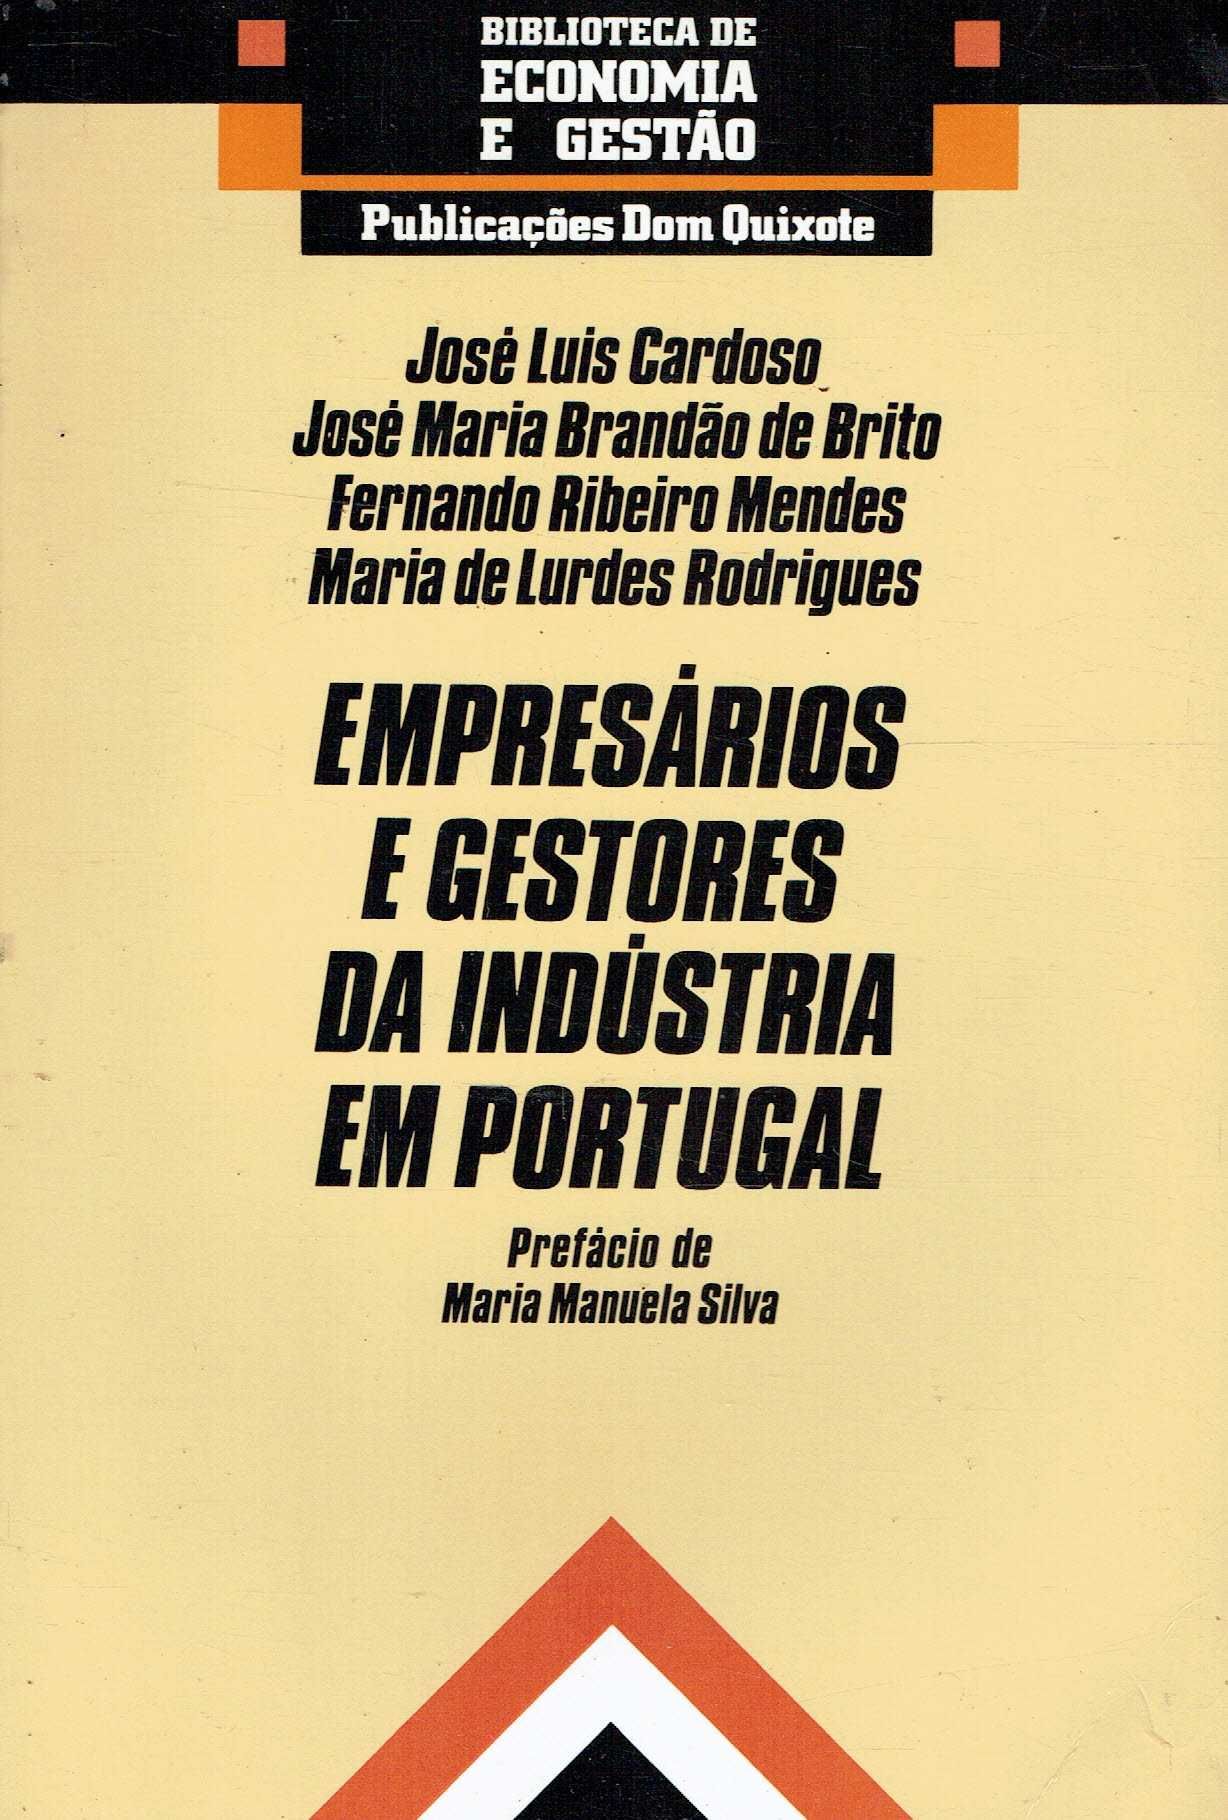 6924

Empresários e Gestores da Industria em Portugal